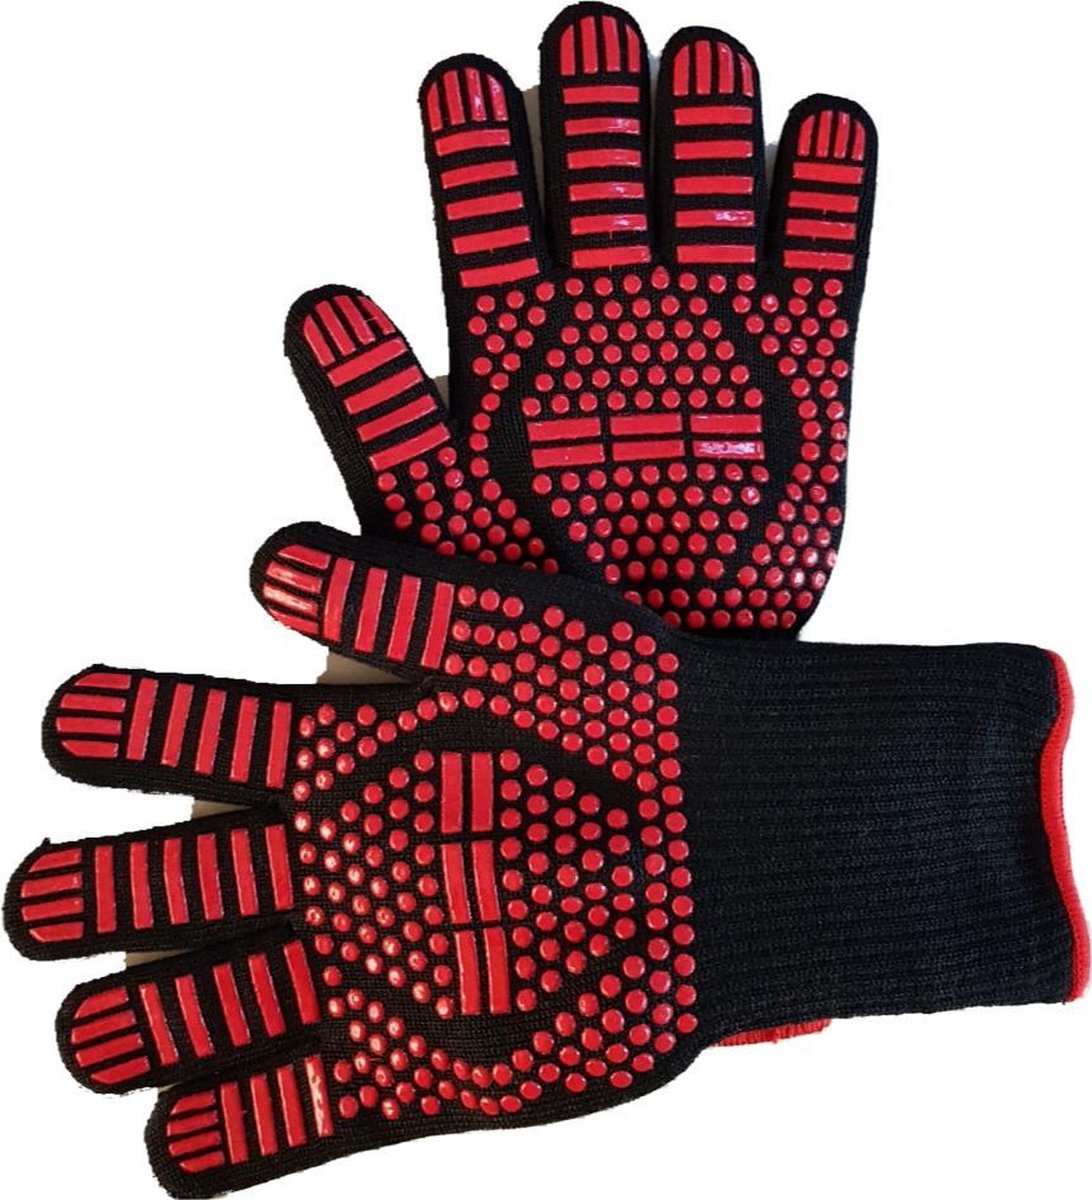 Hittebestendige handschoenen - 2 stuks - Ovenwanten - BBQ - Beschermend - Oven - Antislip - CustomerComfort